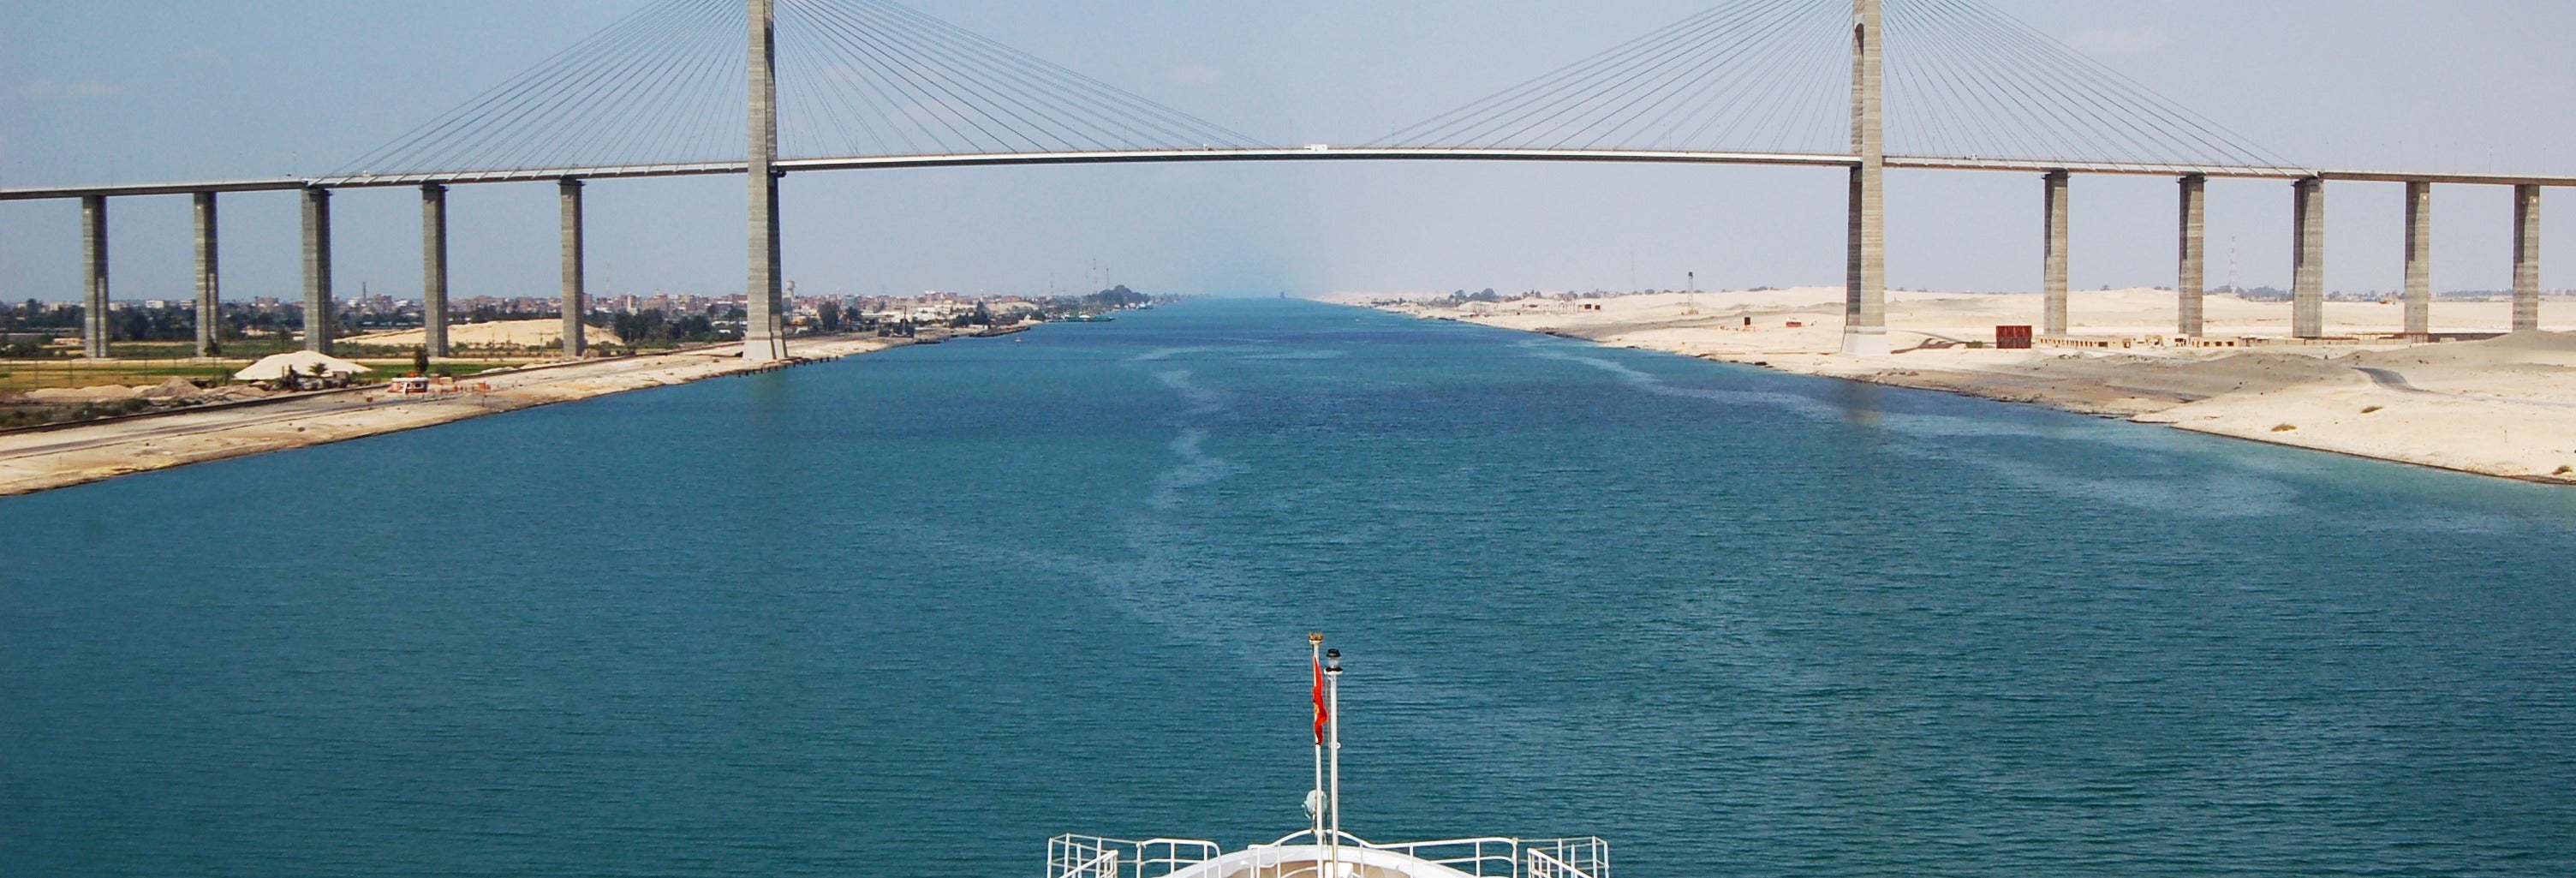 Excursão ao Canal de Suez